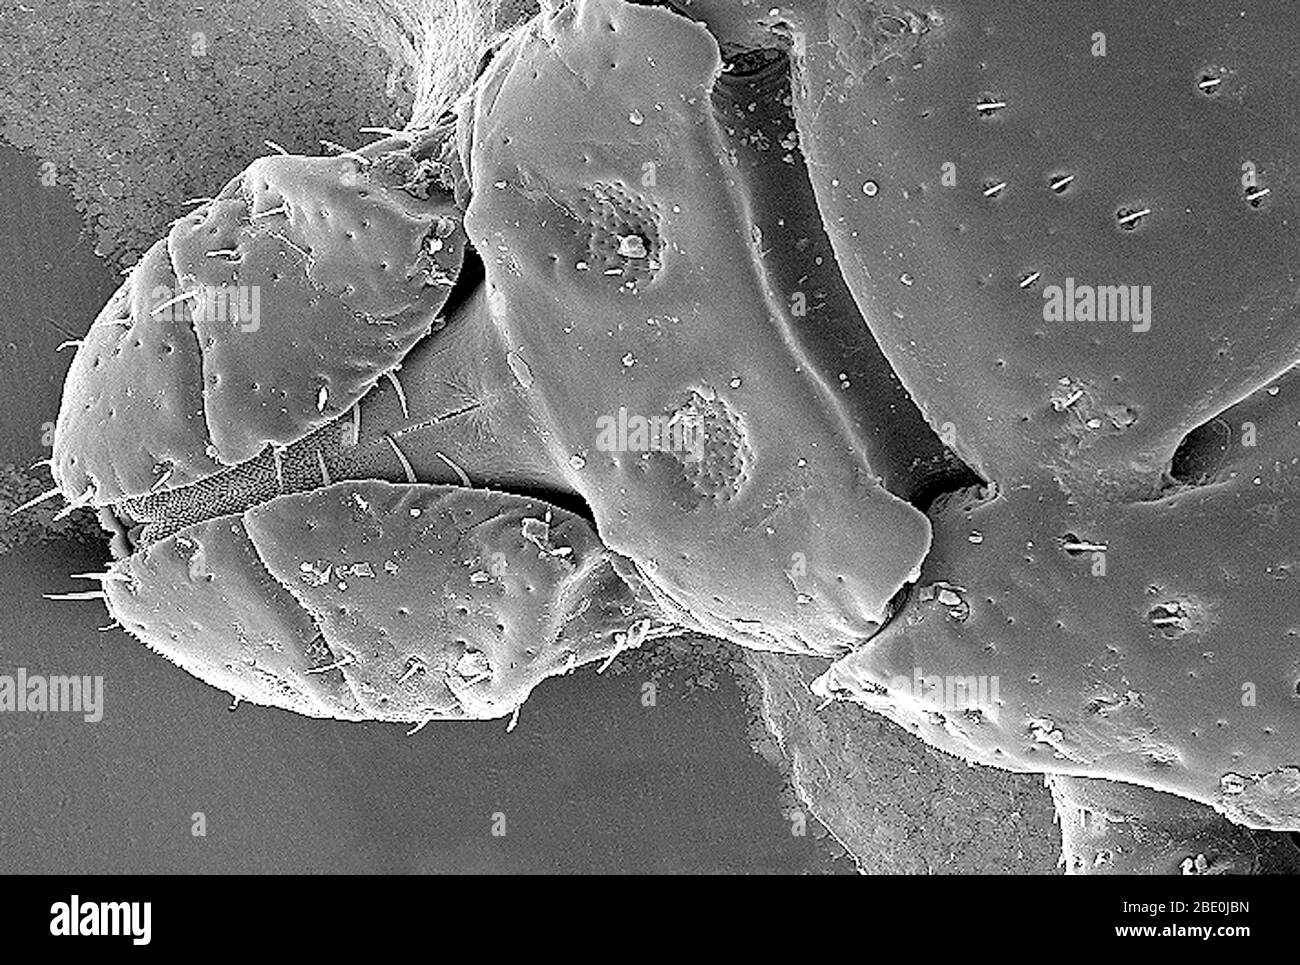 Micrographe électronique à balayage (SEM) montrant la vue dorsale d'un Dermacentor variabilis. D. variabilis, également connu sous le nom de tique de chien américain ou de tique de bois, est une espèce de tique connue pour transporter des bactéries responsables de plusieurs maladies chez l'homme, y compris la fièvre tachetée des montagnes Rocheuses et la tularémie (Francisella tularensis). C'est l'une des tiques dures les plus connues. Les maladies sont propagées lorsqu'il suce le sang de l'hôte, ce qui peut prendre plusieurs jours pour que l'hôte puisse éprouver certains symptômes. Agrandissement : 98 fois. Banque D'Images